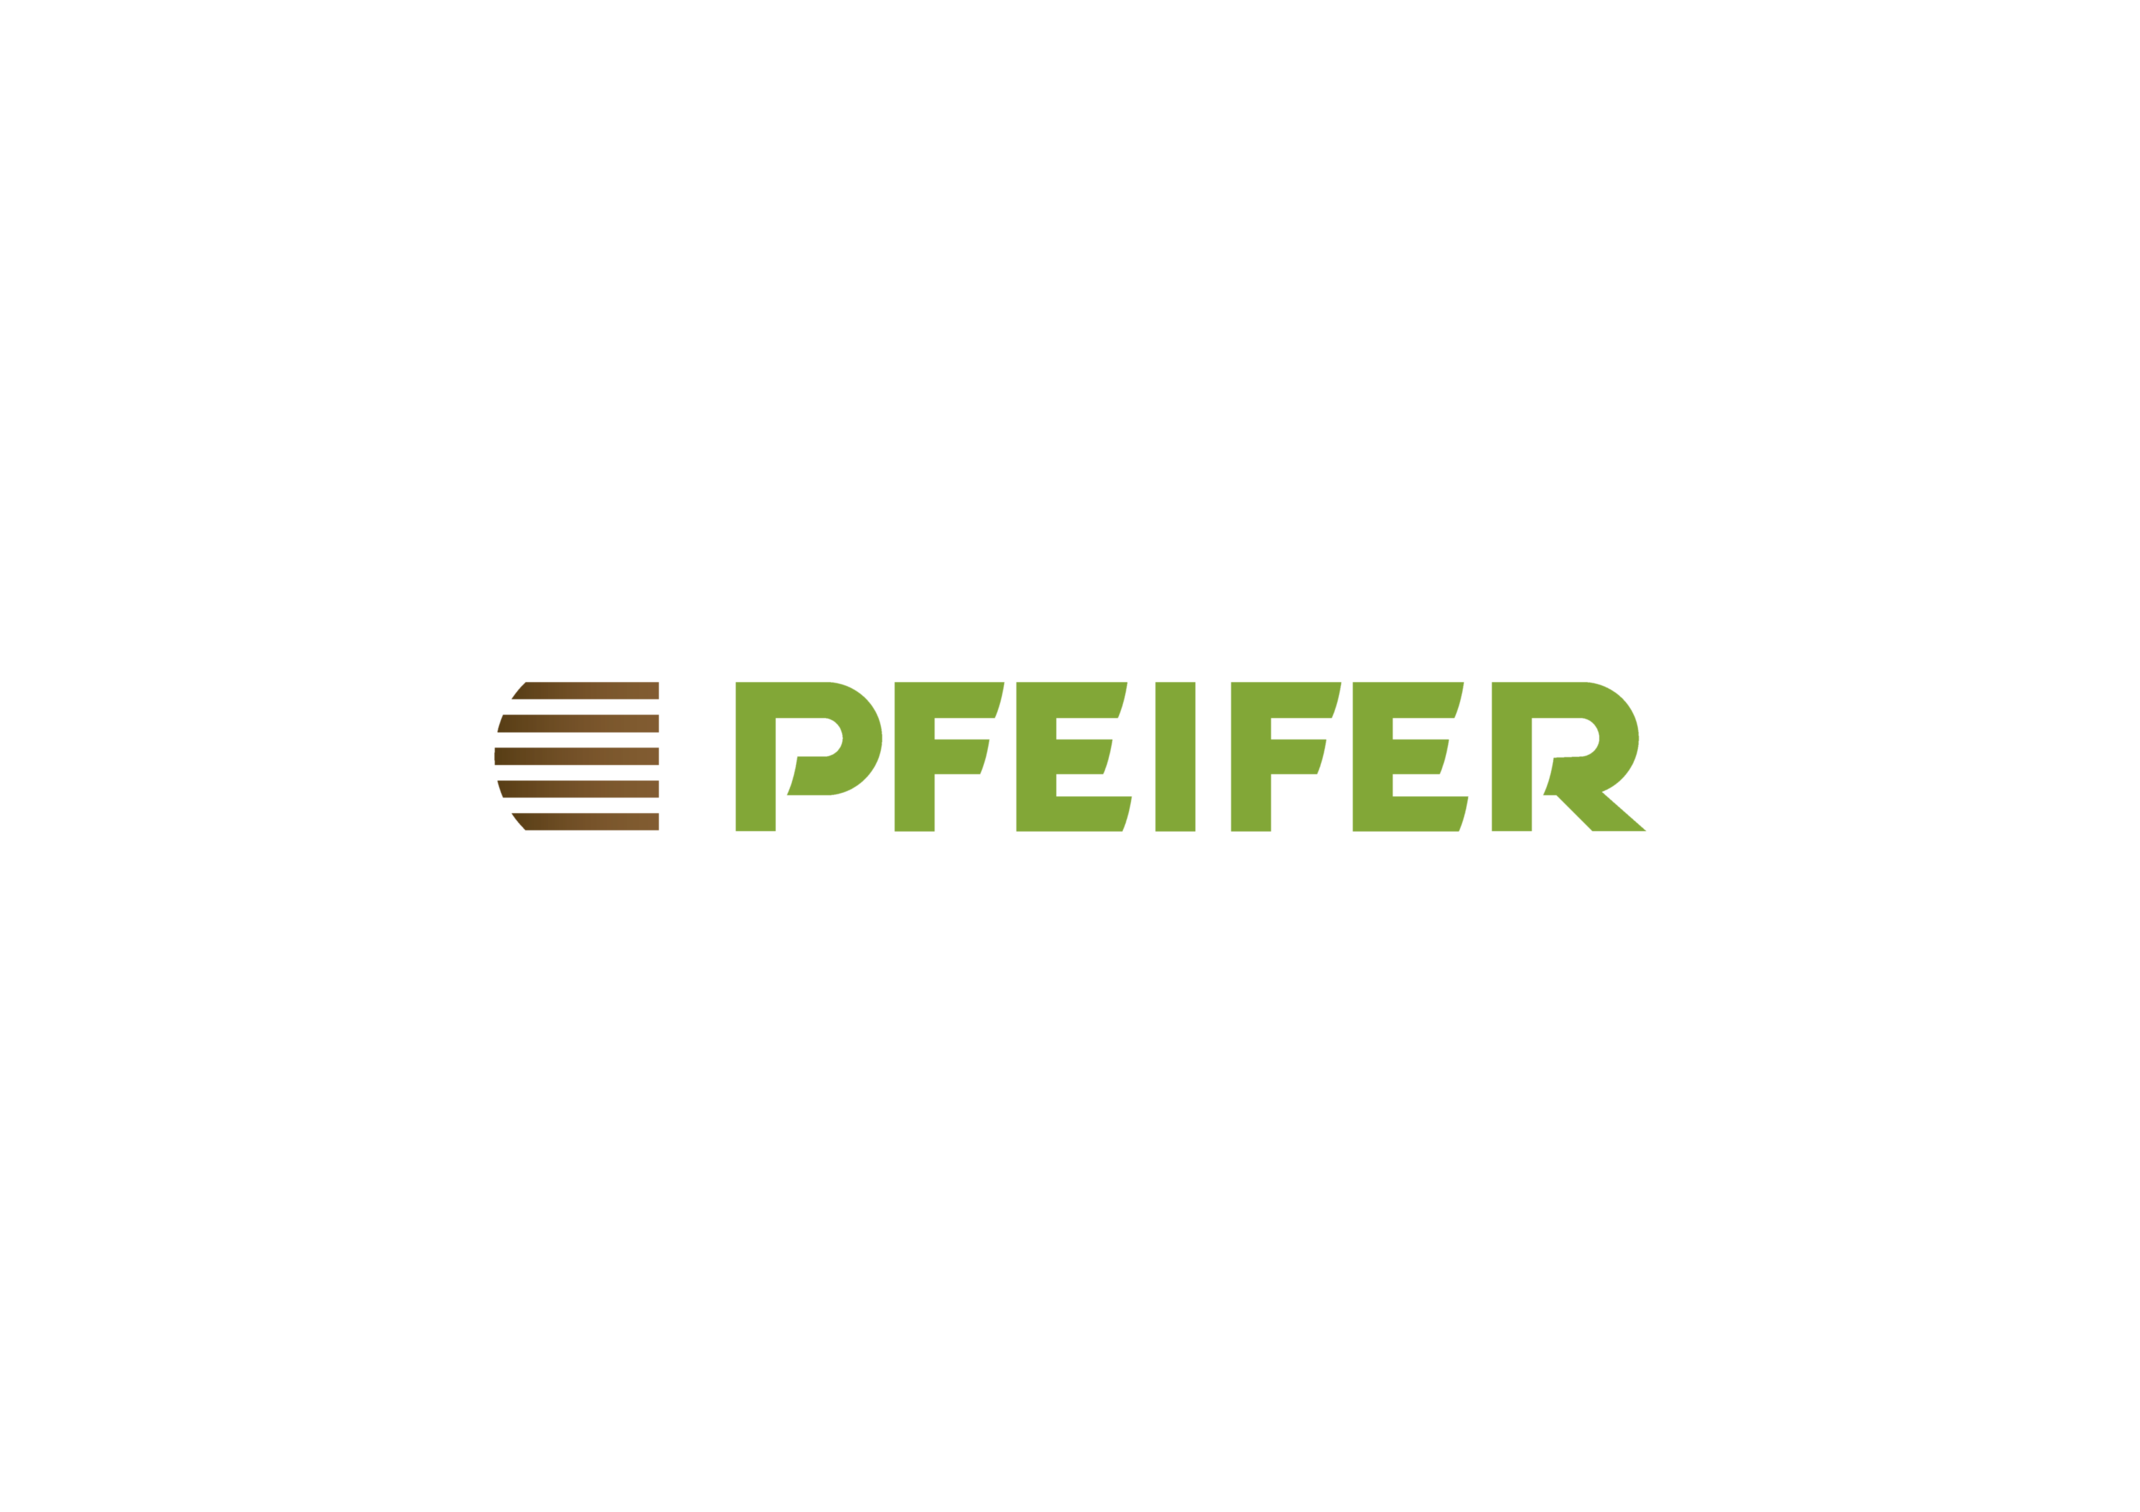 Logo Pfeifer Group